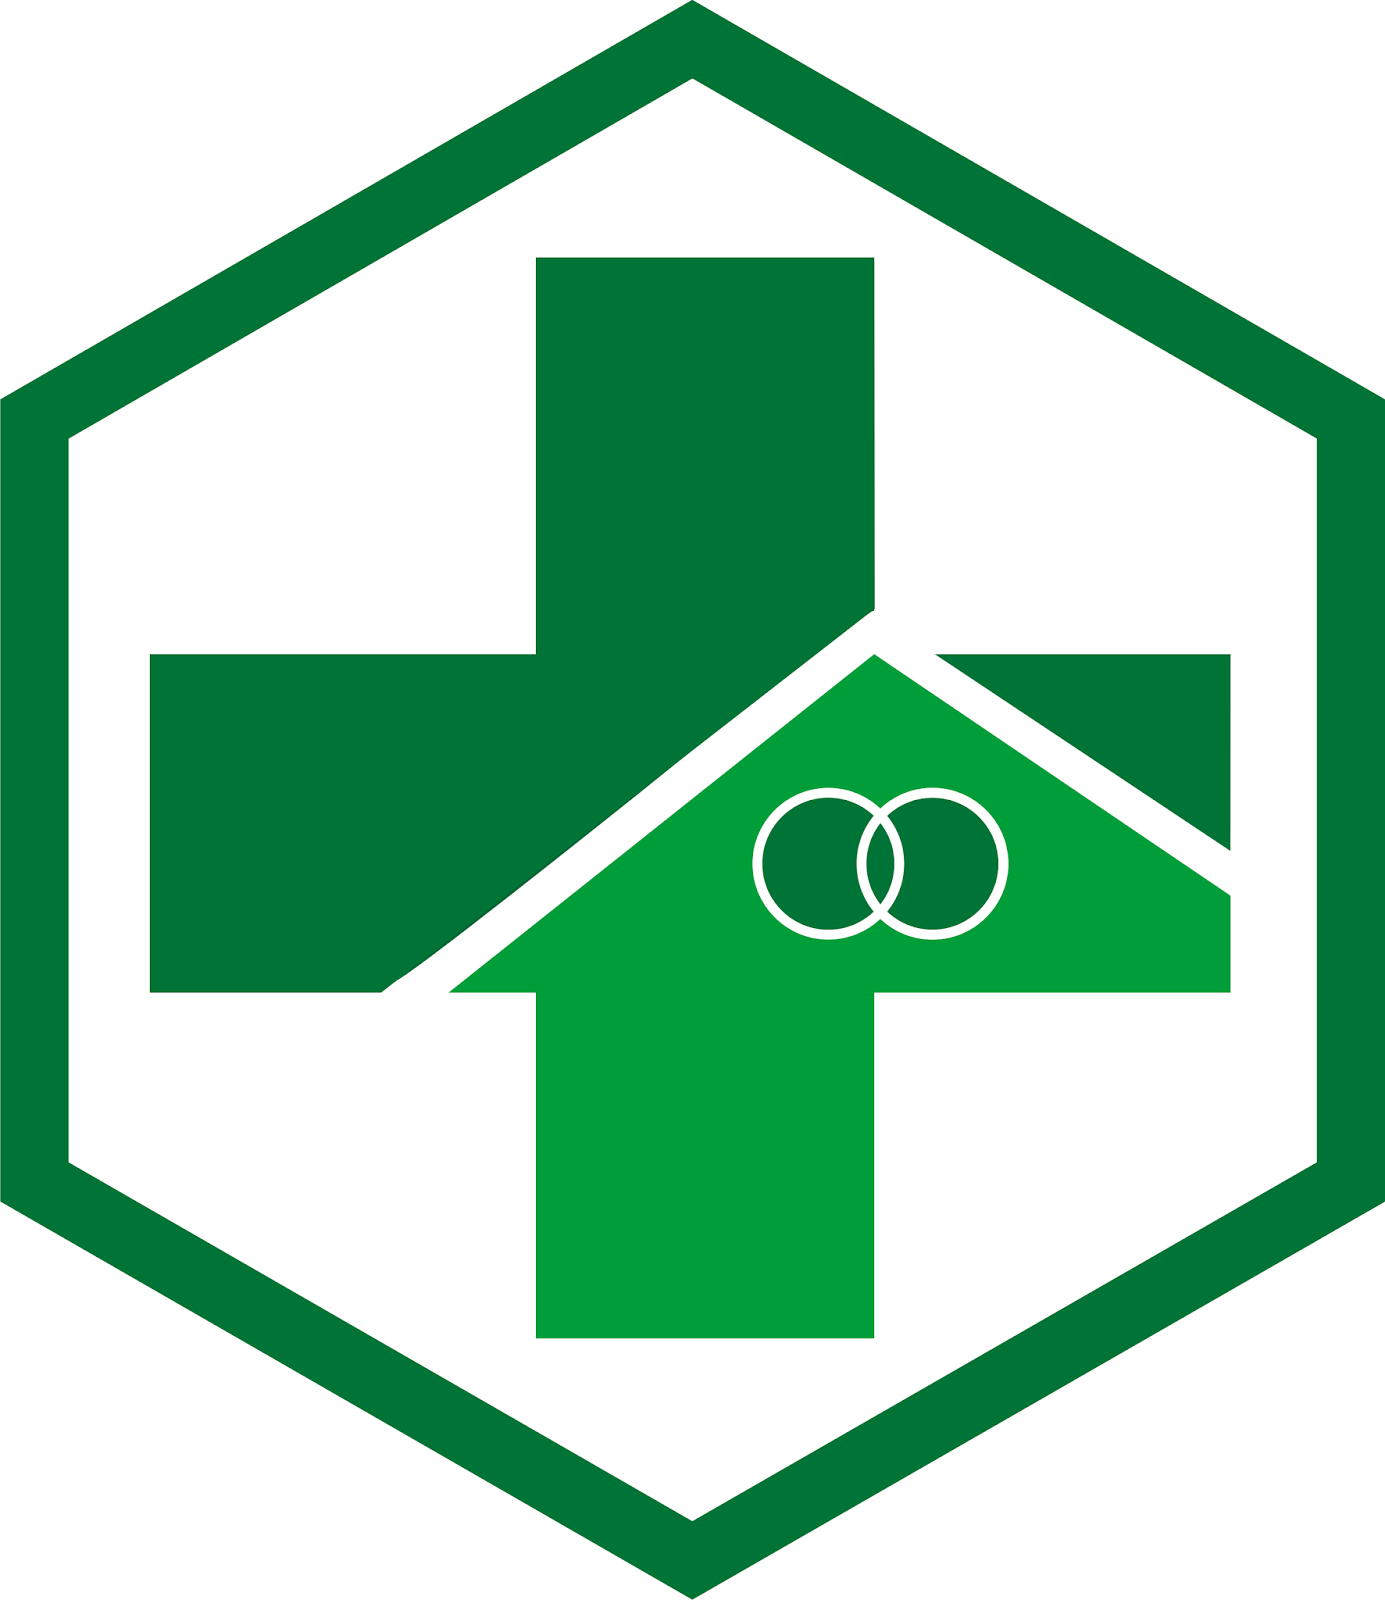 Logo Puskesmas sesuai Permenkes 75 tahun 2014